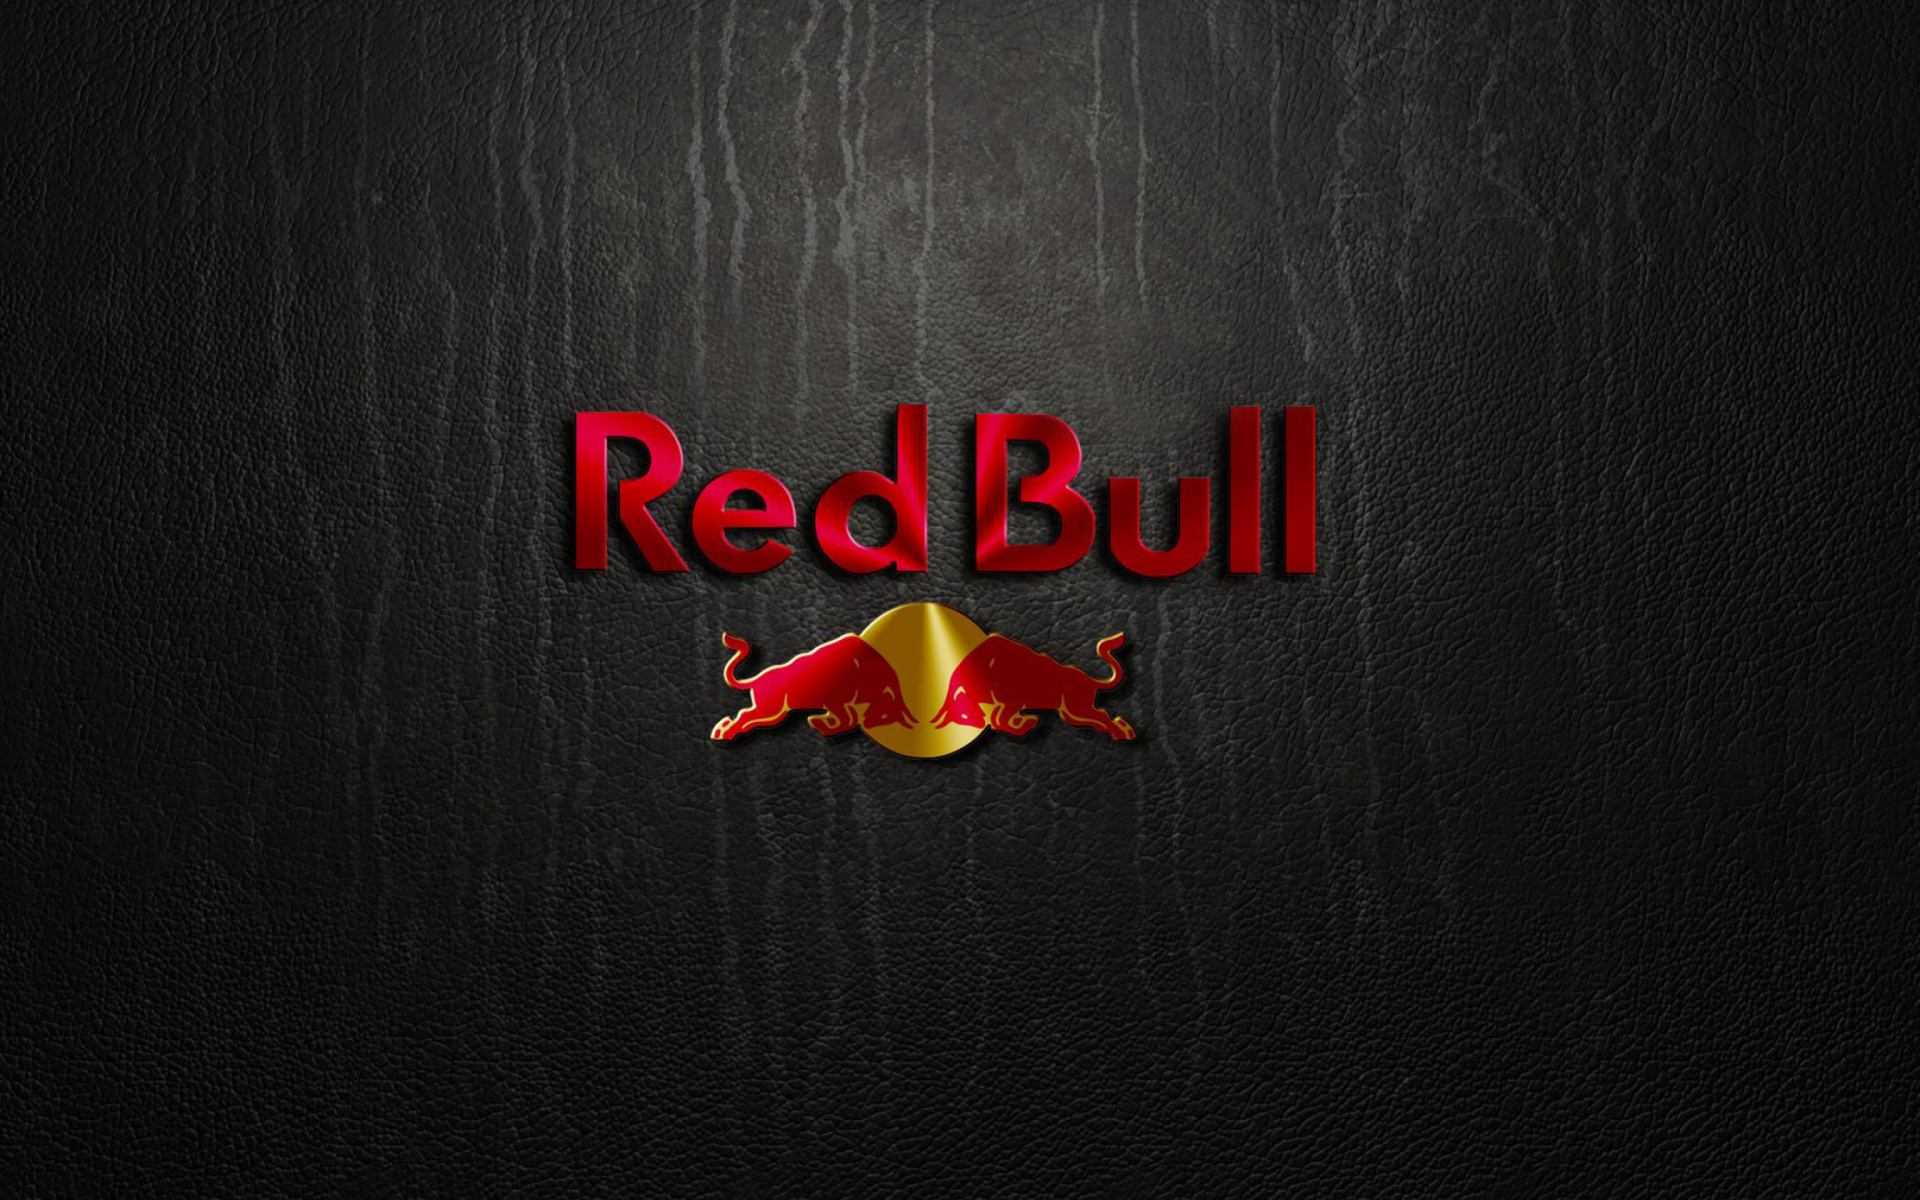 Red Bull Wallpaper For Widescreen Desktop Pc Full Hd - High Resolution - HD Wallpaper 